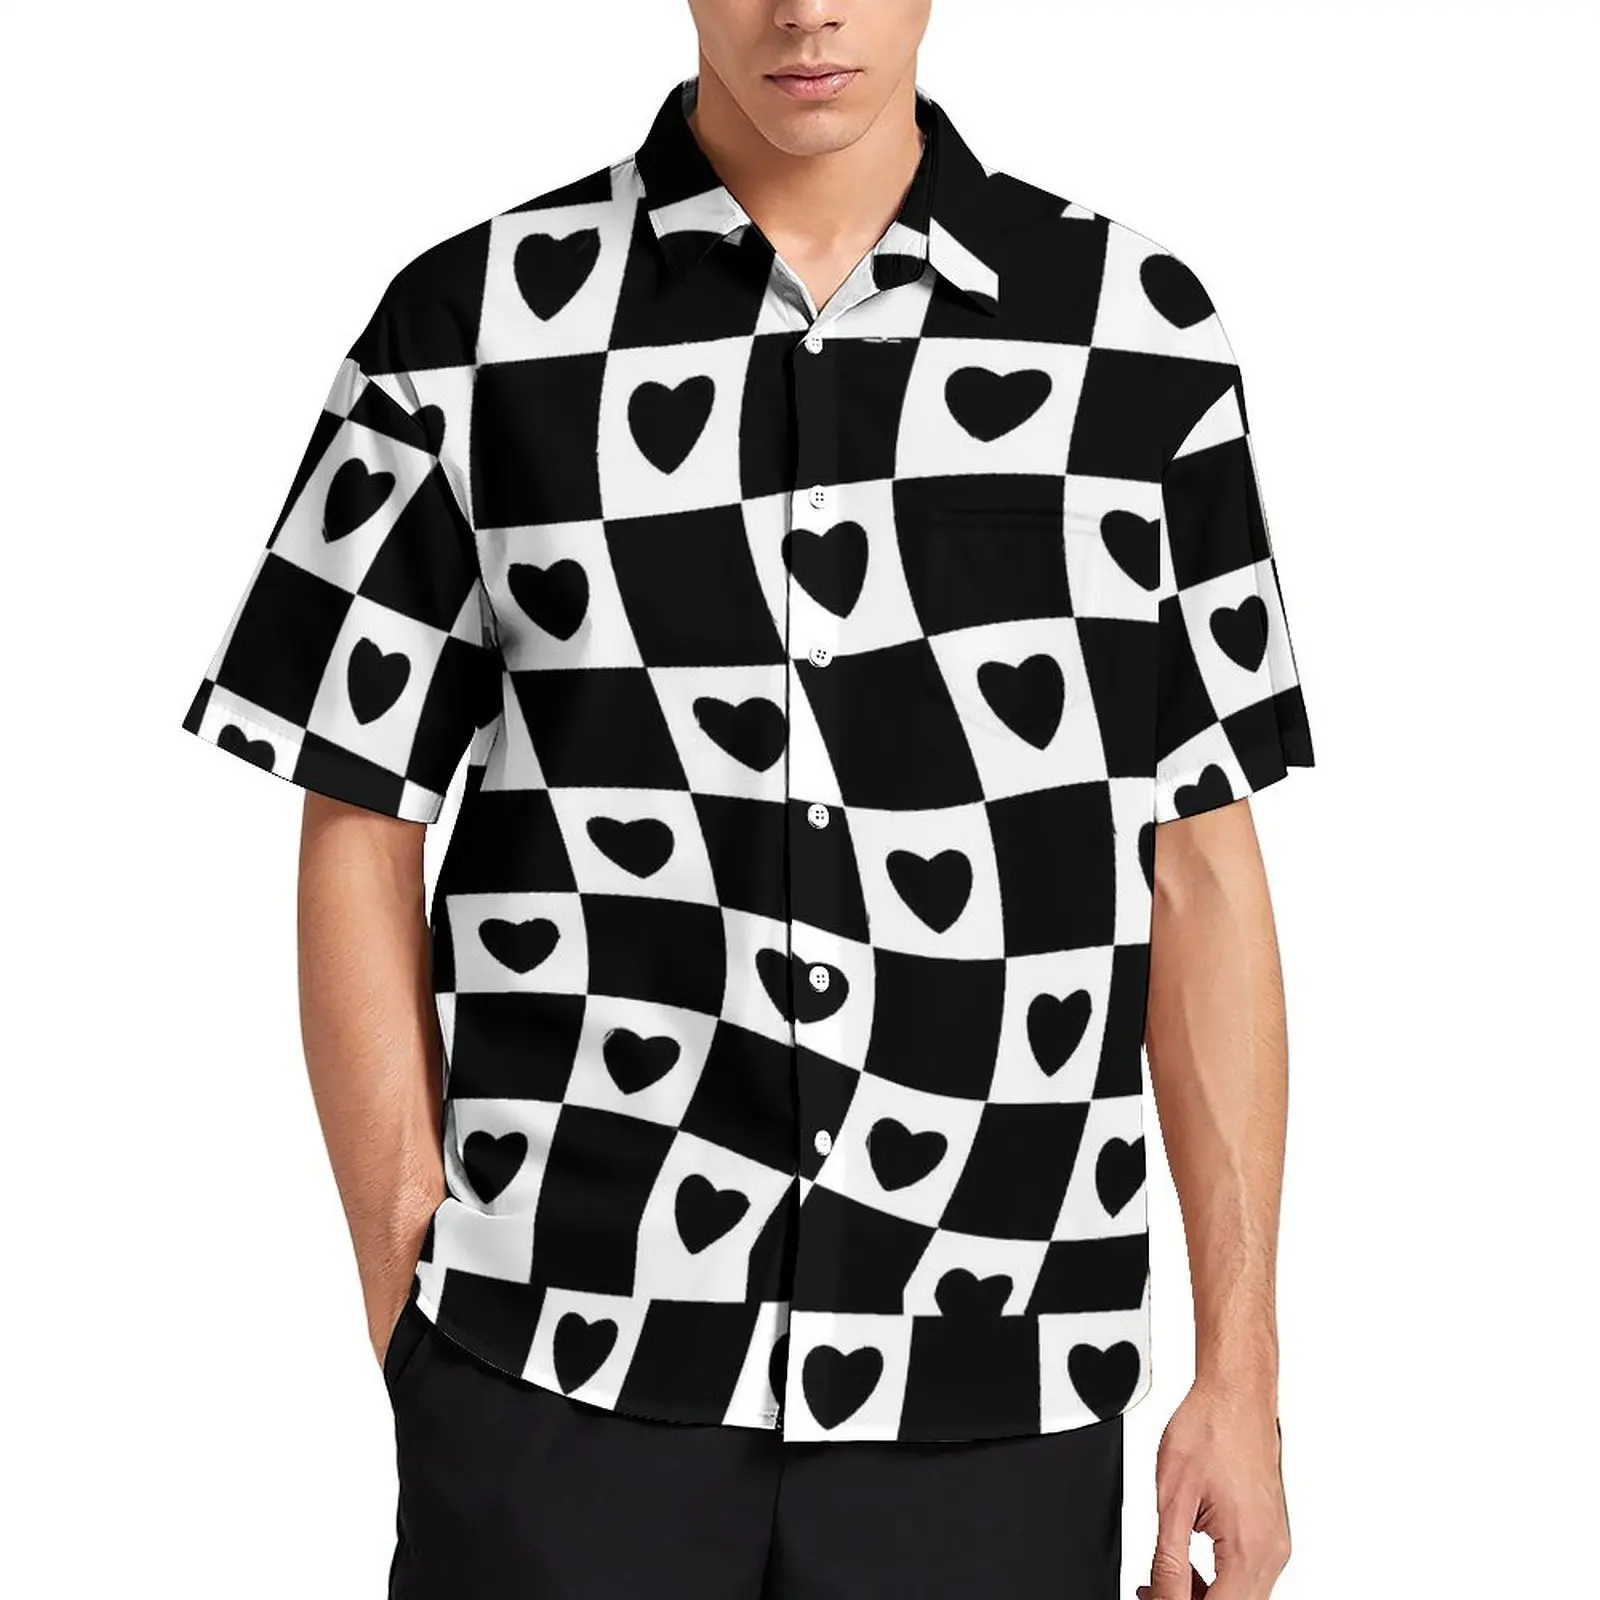 

Hearts Check Print Beach Shirt Black And White Hawaii Casual Shirts Male Vintage Blouses Short Sleeve Harajuku Pattern Top